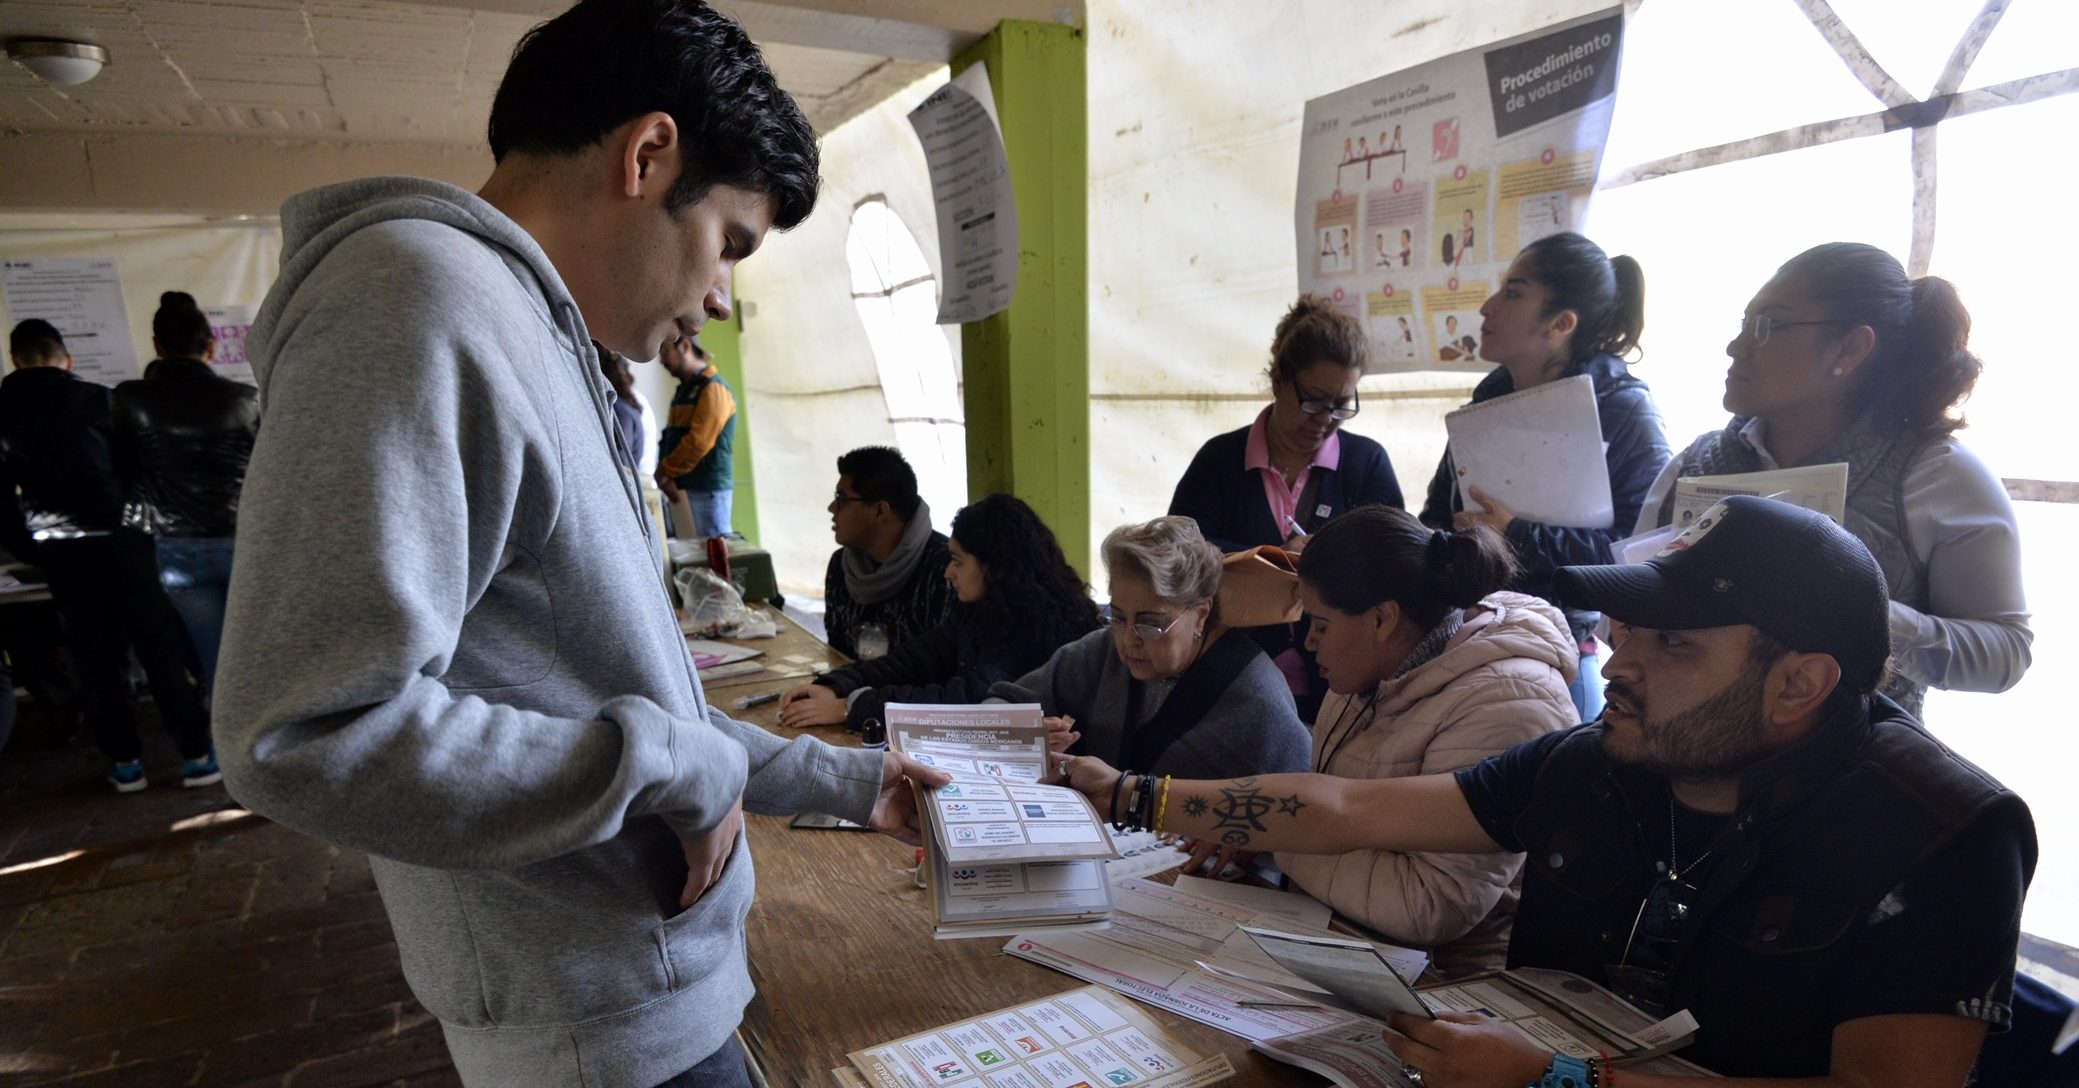 Elección extraordinaria en Puebla será el 2 de junio